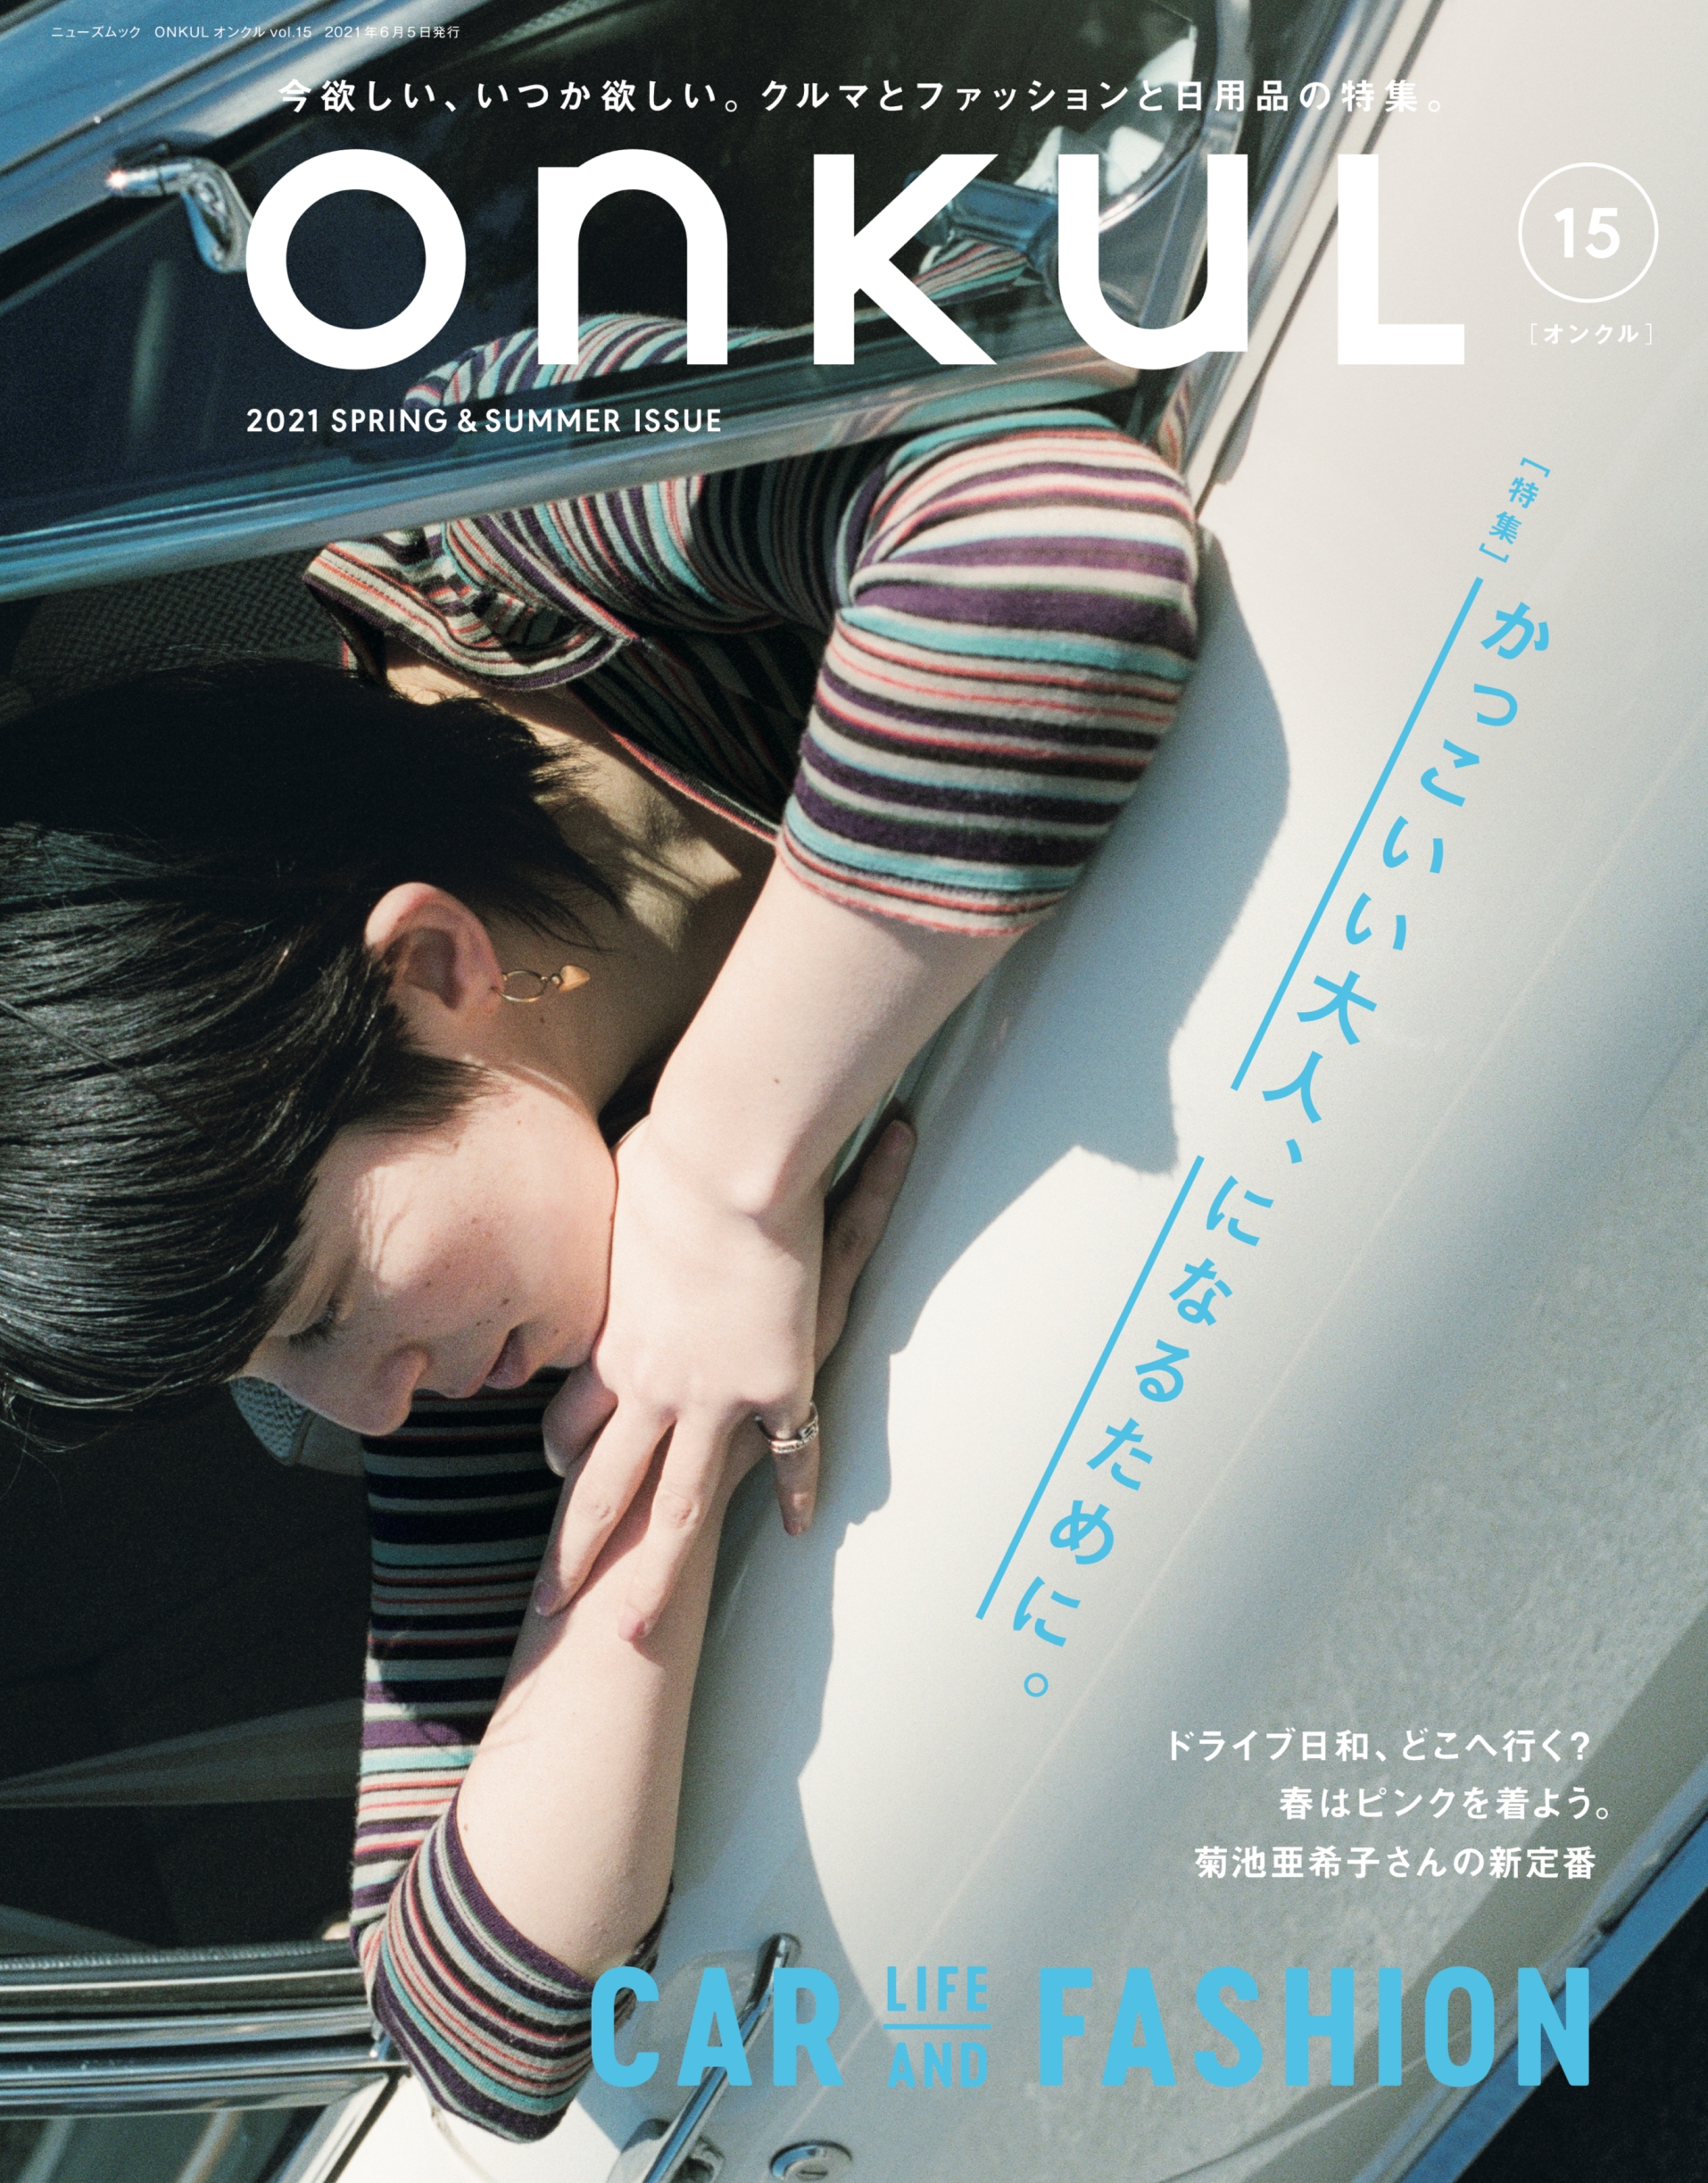 かっこいい大人 になるために Onkul オンクル Vol 15 4月22日 木 発売 三栄のプレスリリース